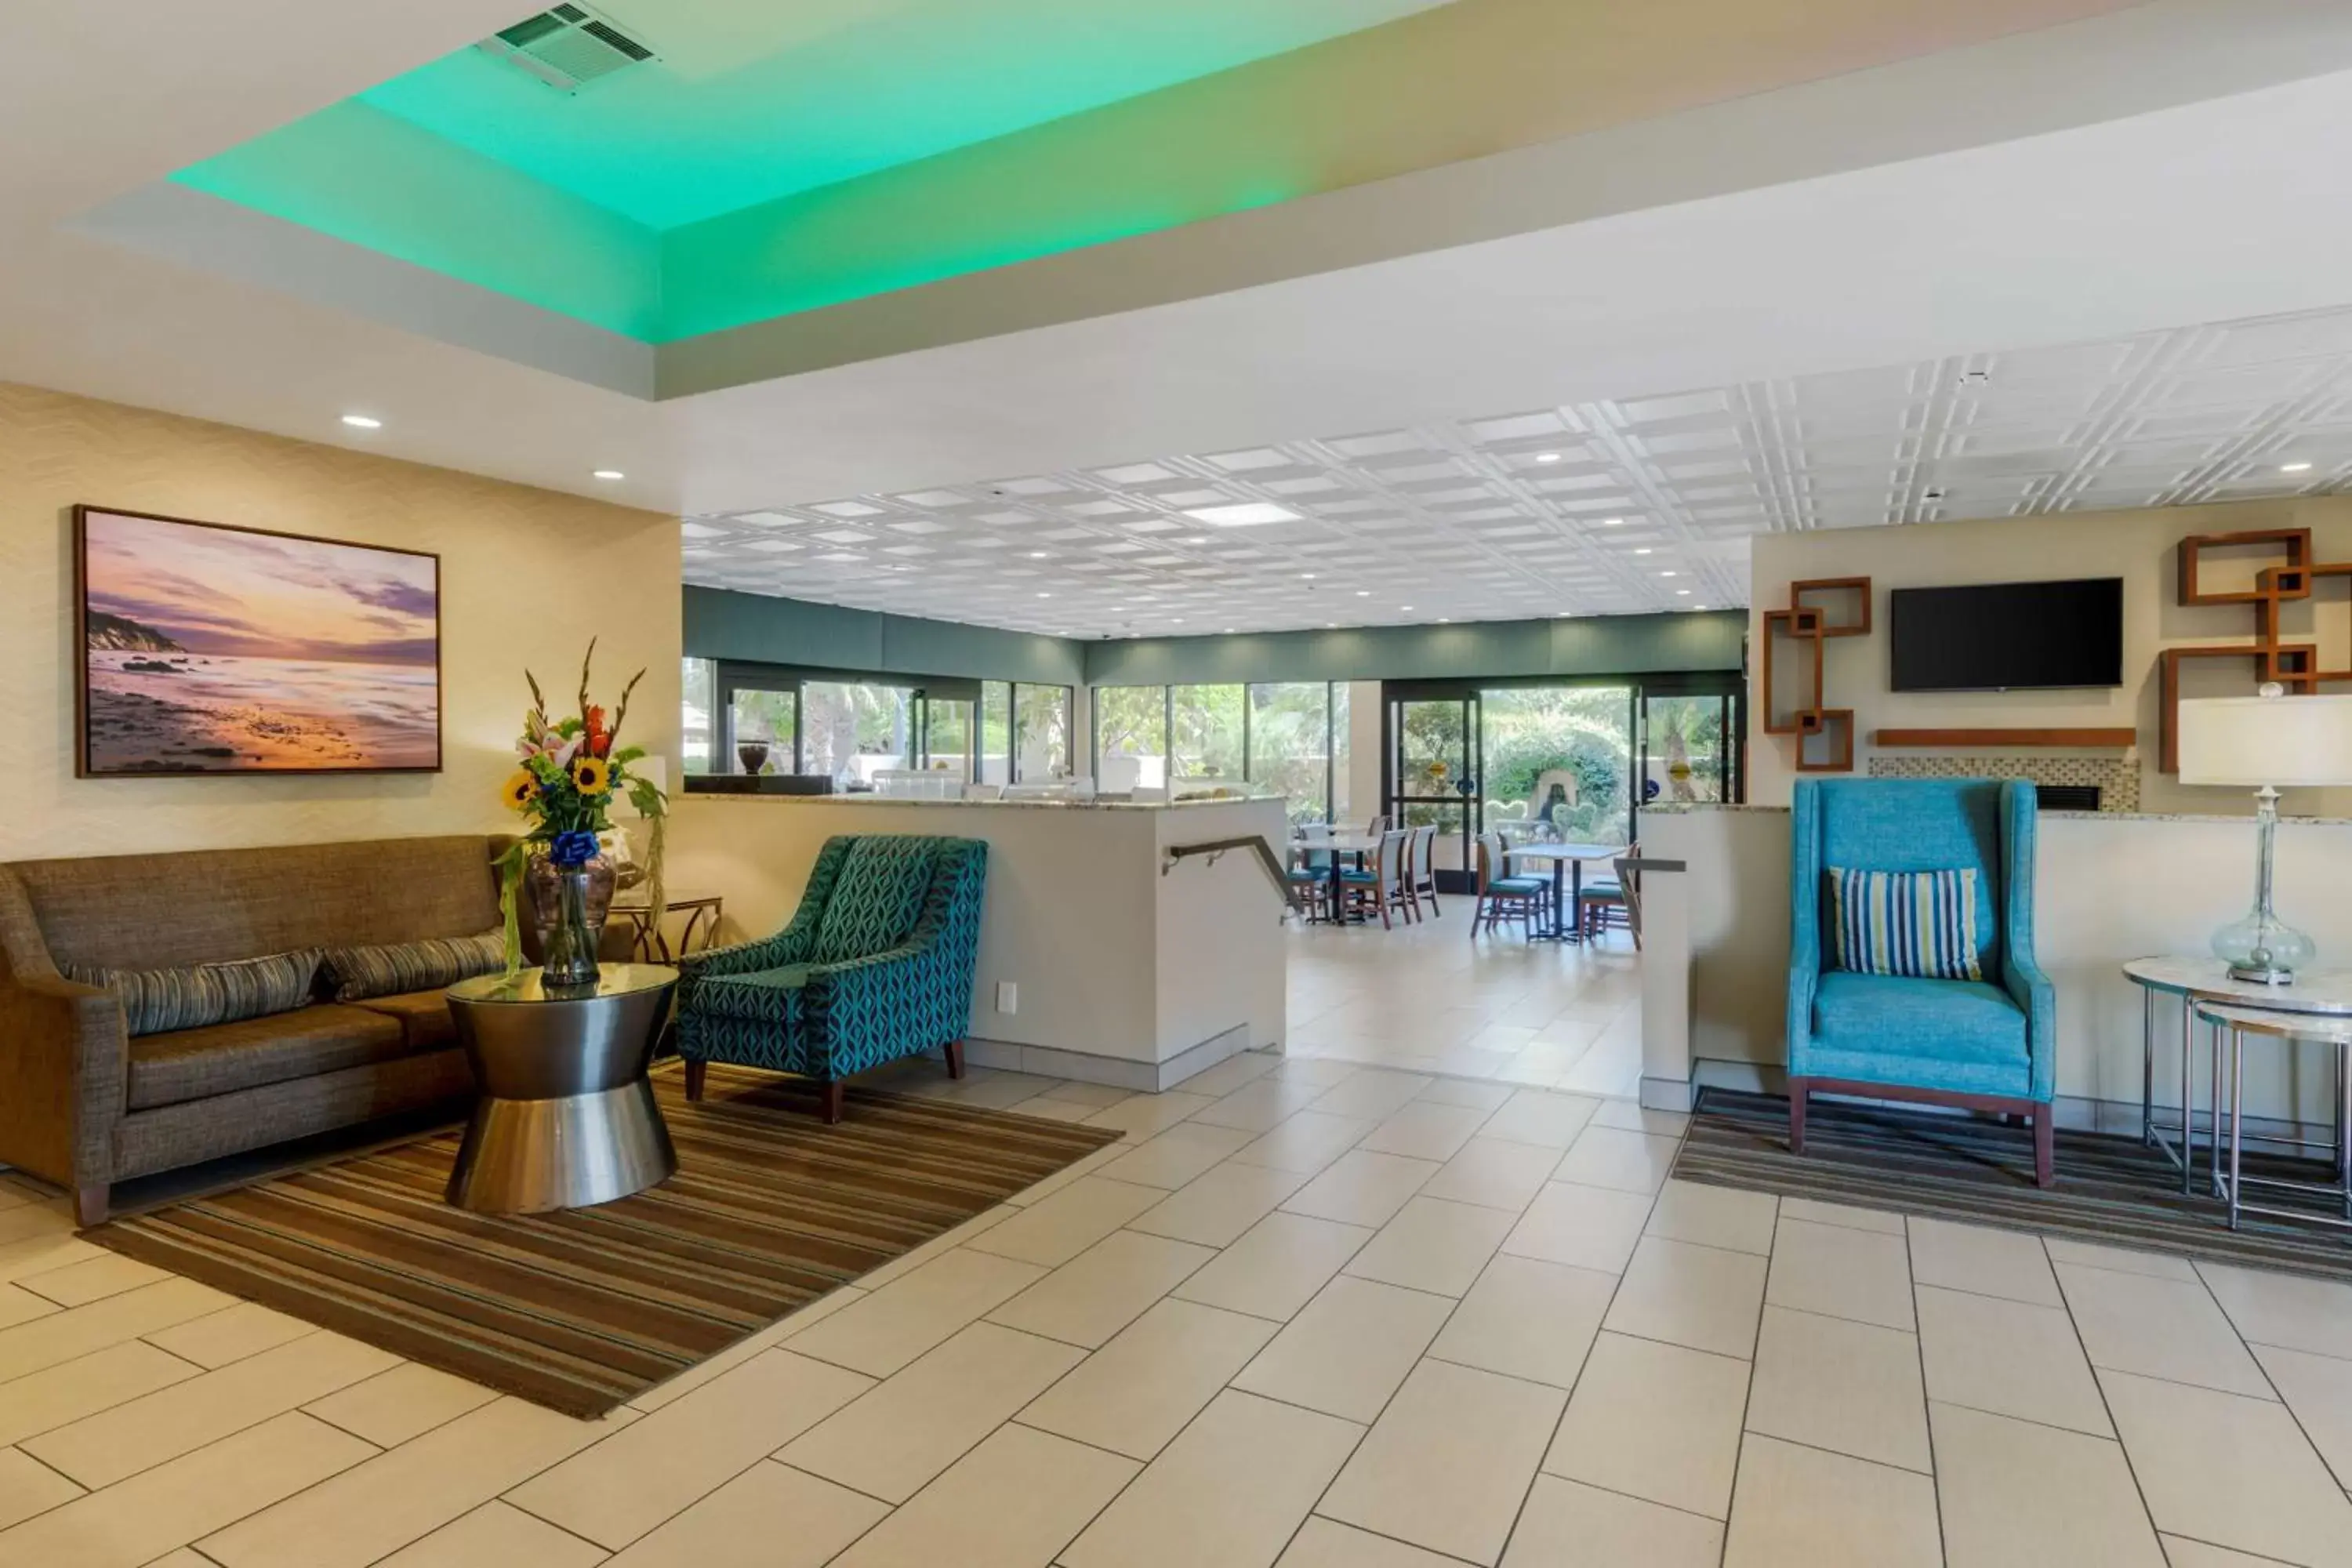 Lobby or reception, Lobby/Reception in Best Western Plus South Coast Inn